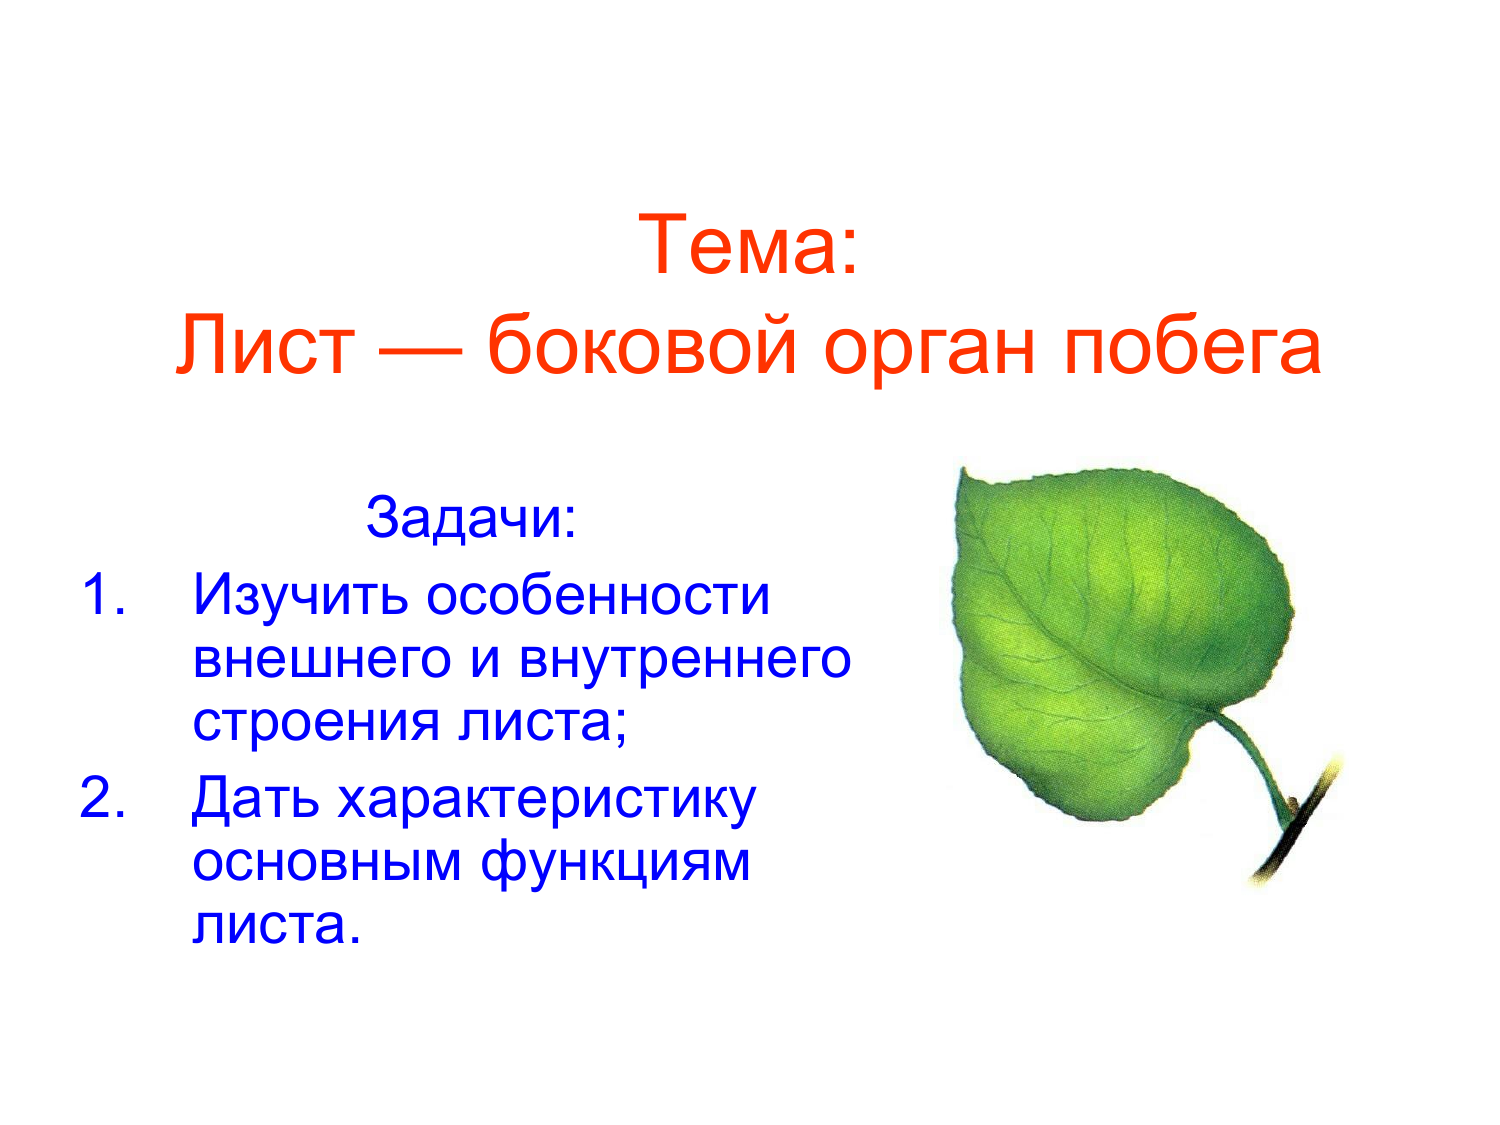 Биология 6 класс функция листьев. Внешнее строение листа. Лист боковой орган побега. Внутреннее строение листа. Структура листа.